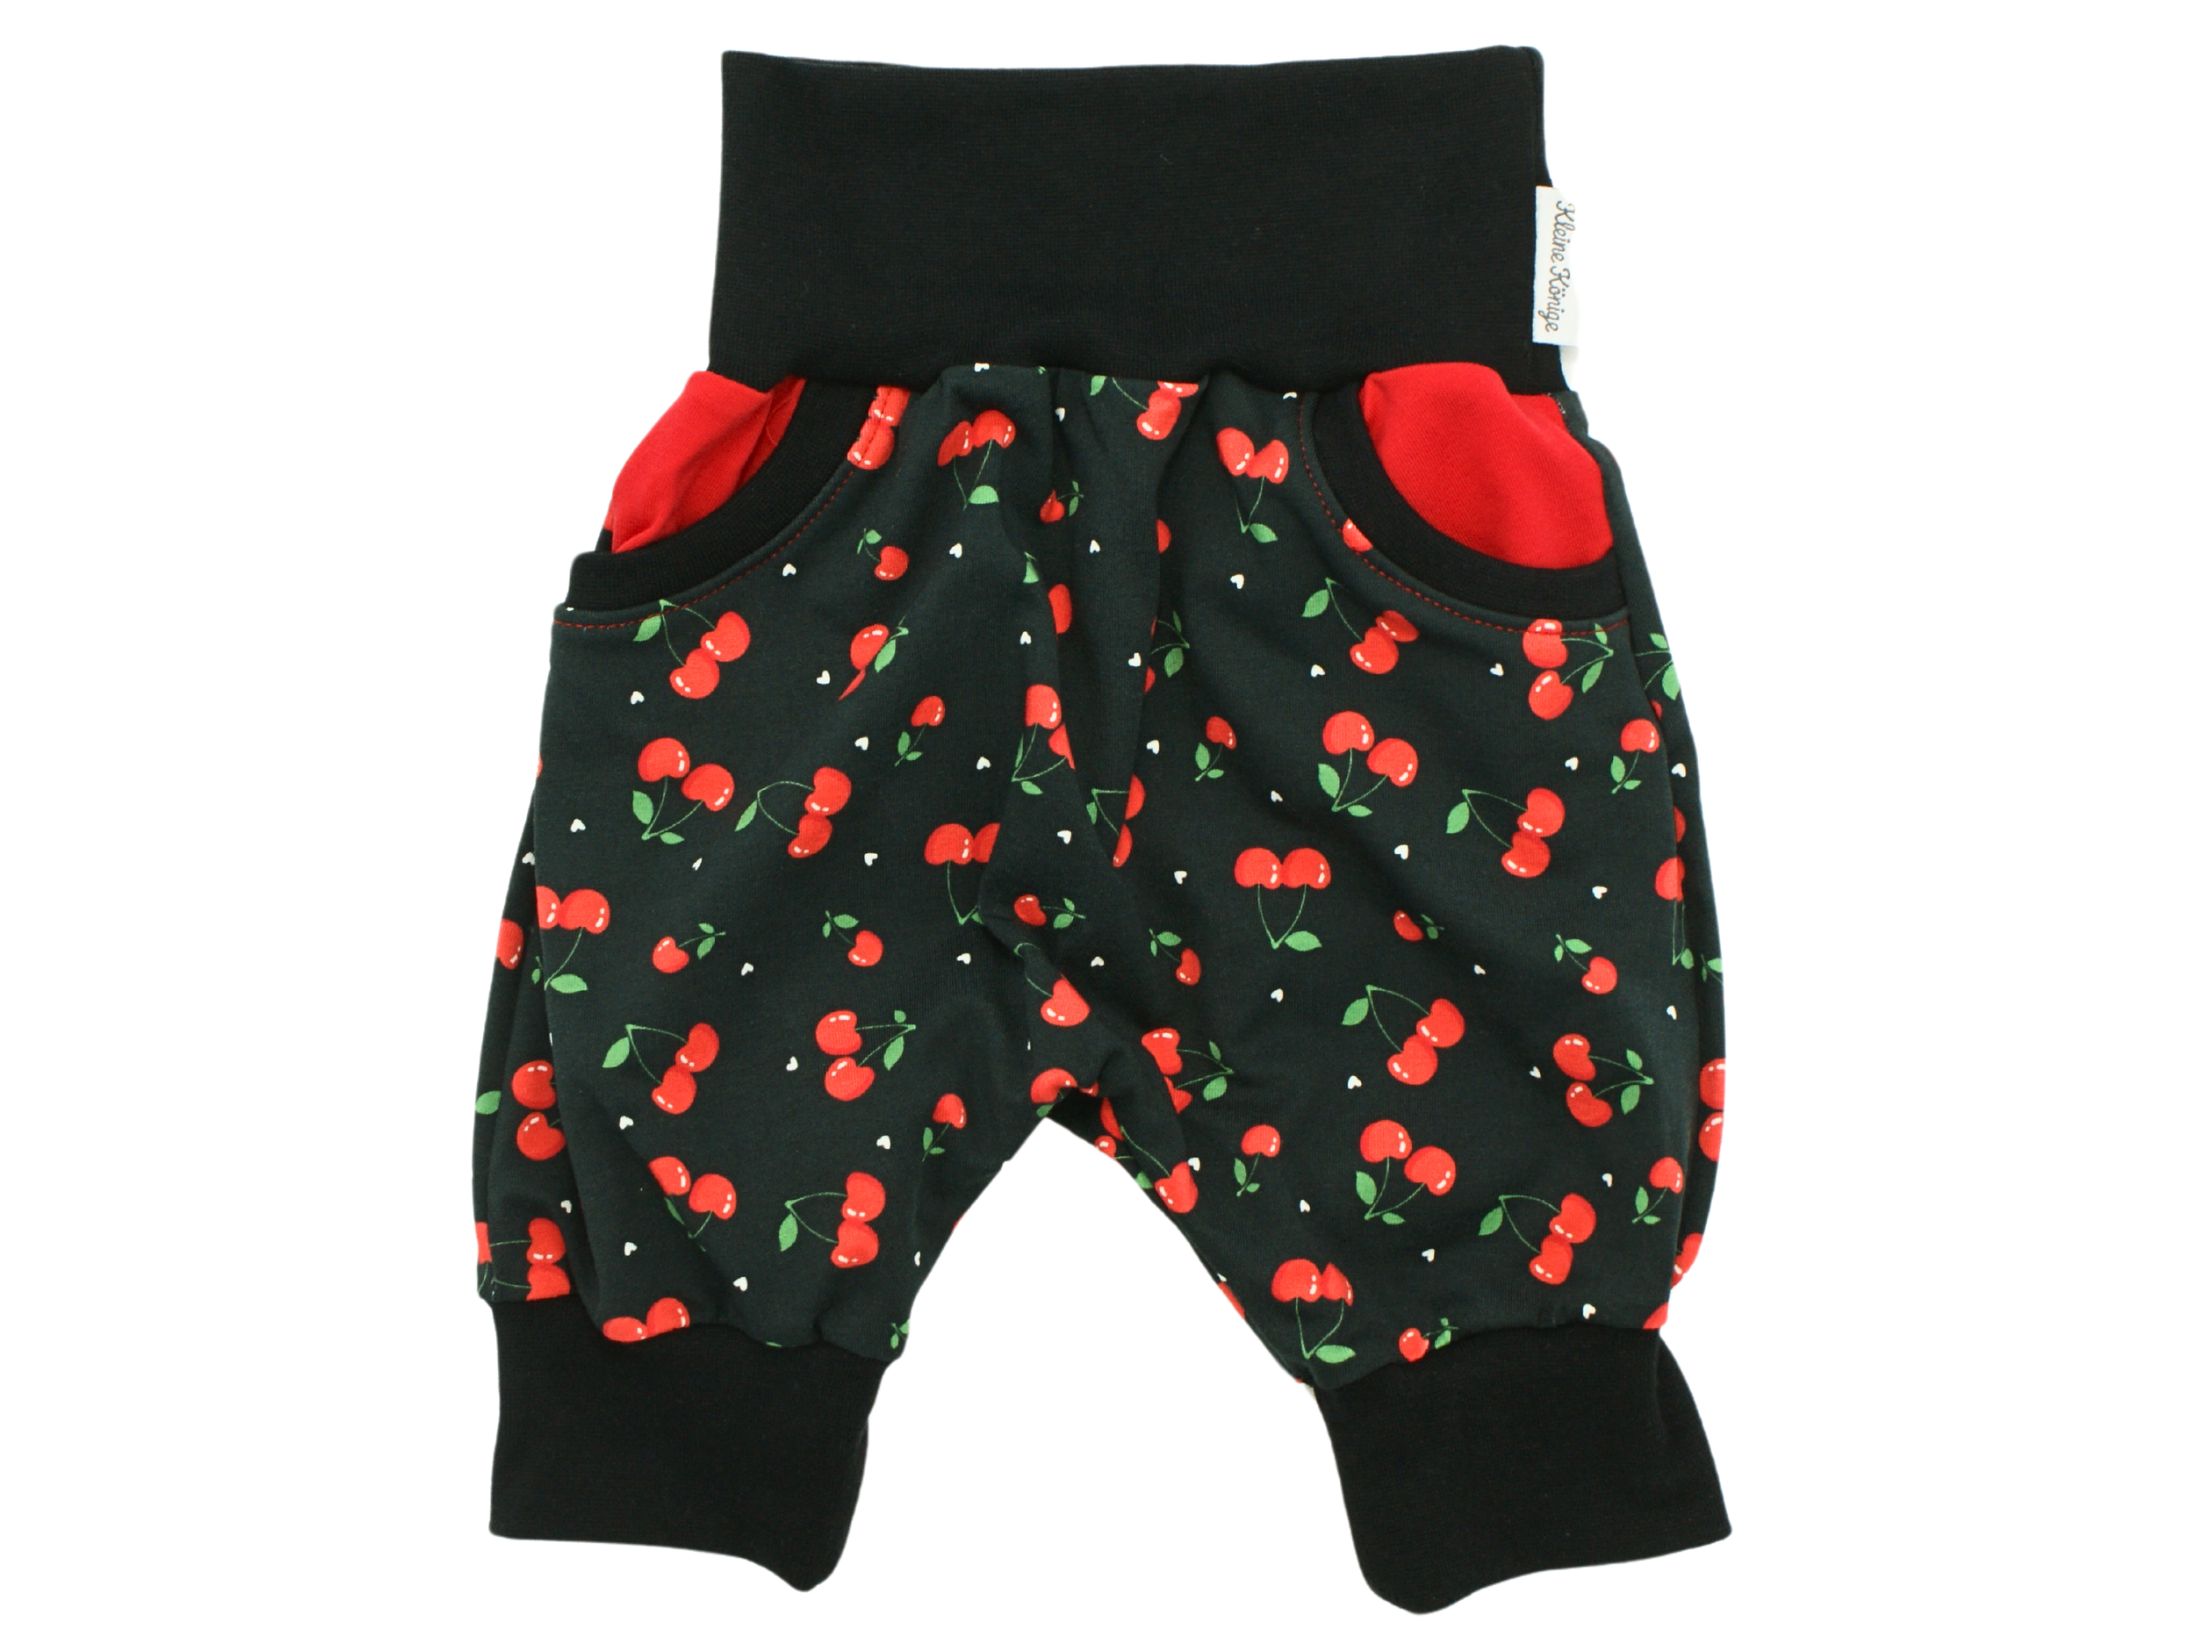 Kinder Bermuda-Shorts "Minikirschen" schwarz rot